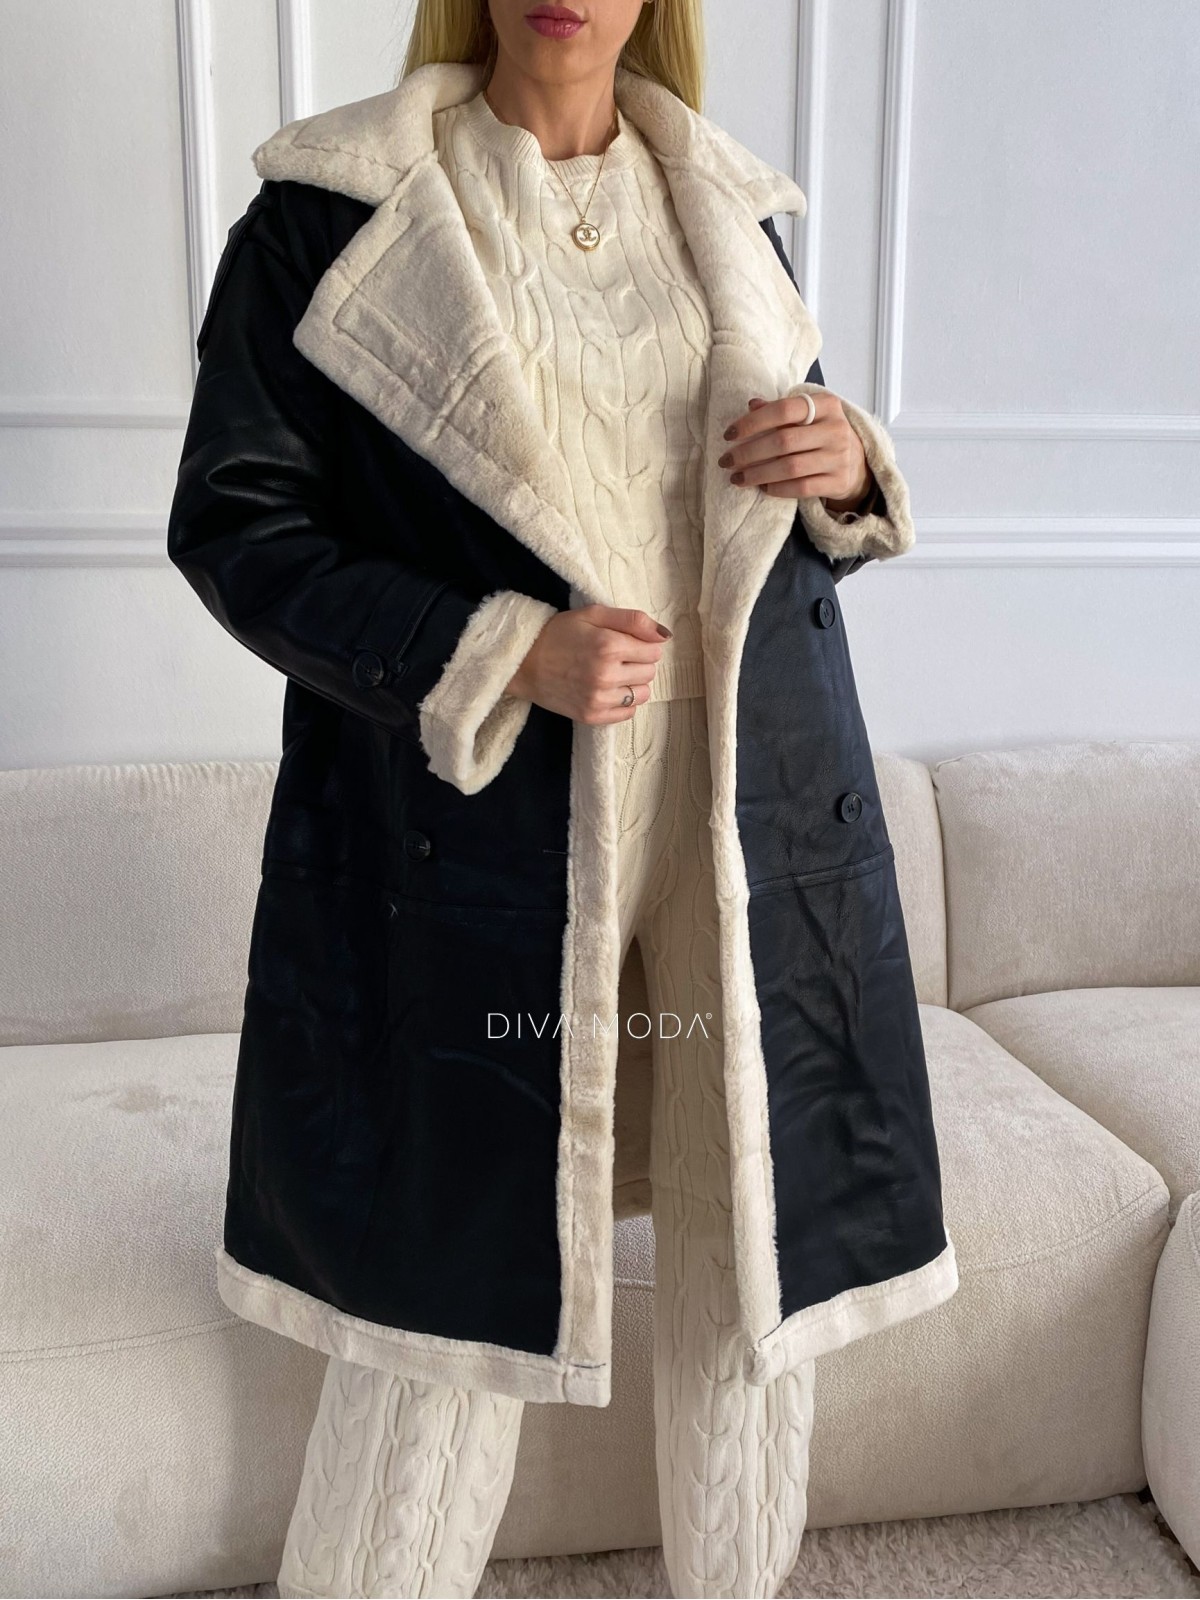 Oversize zimný koženkový kabát s kožušinou čierny S 106